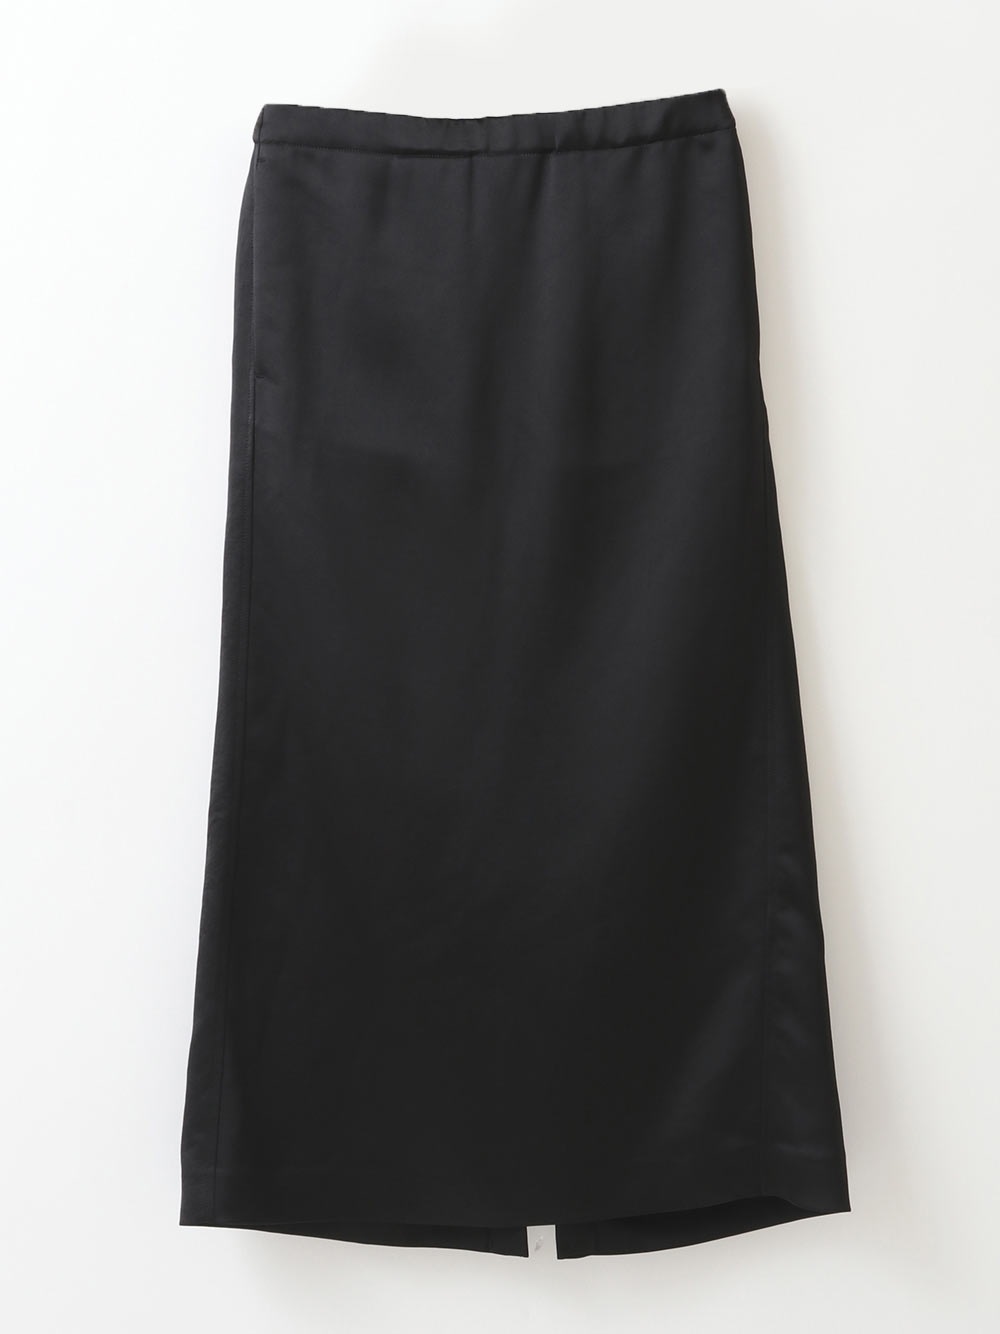 Satin Skirt(00ブラック-フリー)